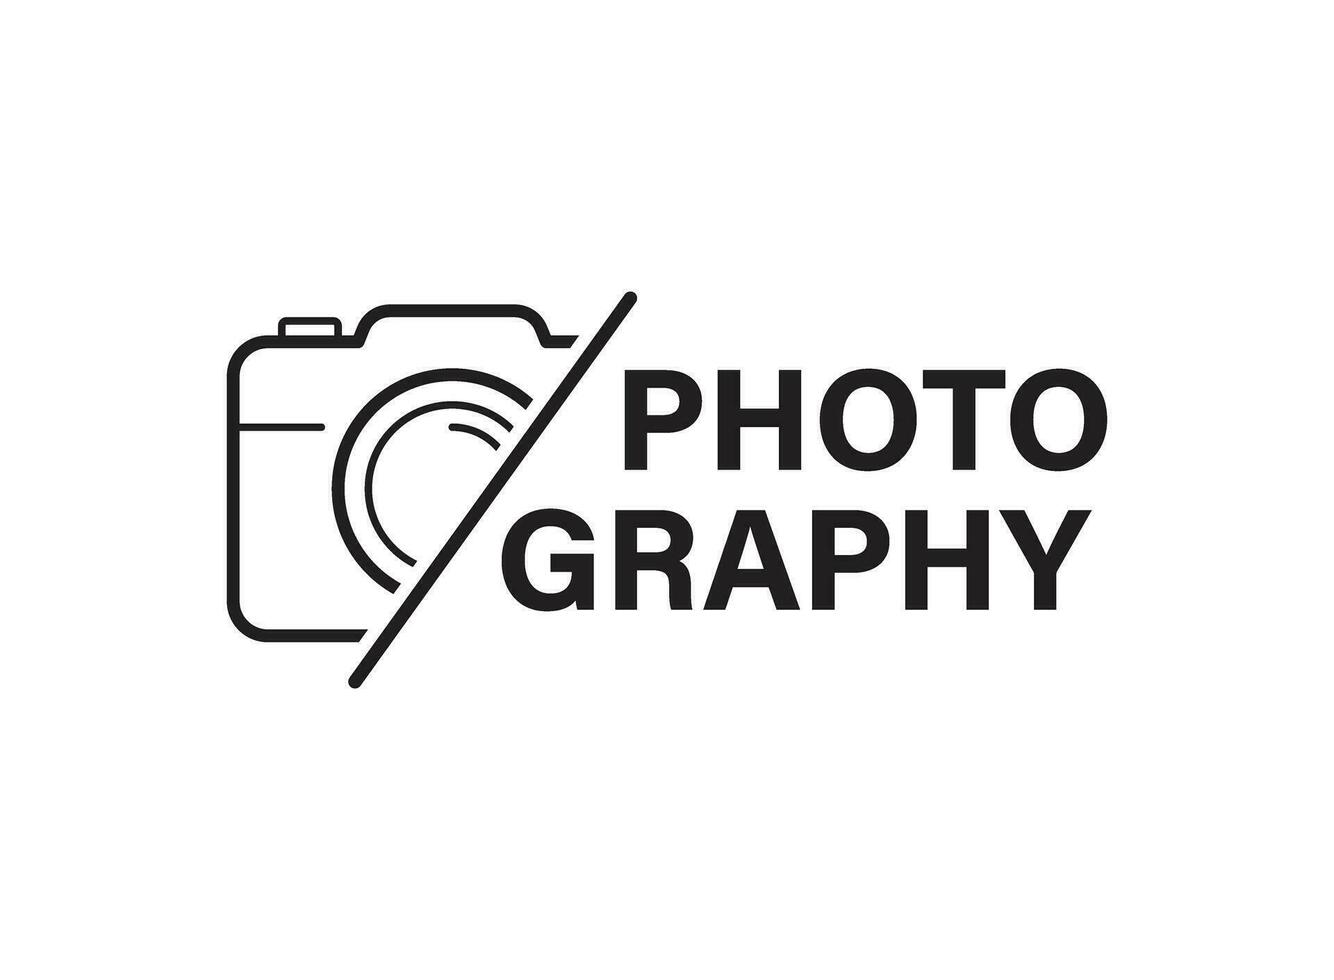 kamera ikon i platt stil. fotografi vektor illustration på isolerat bakgrund. Foto tecken företag begrepp.